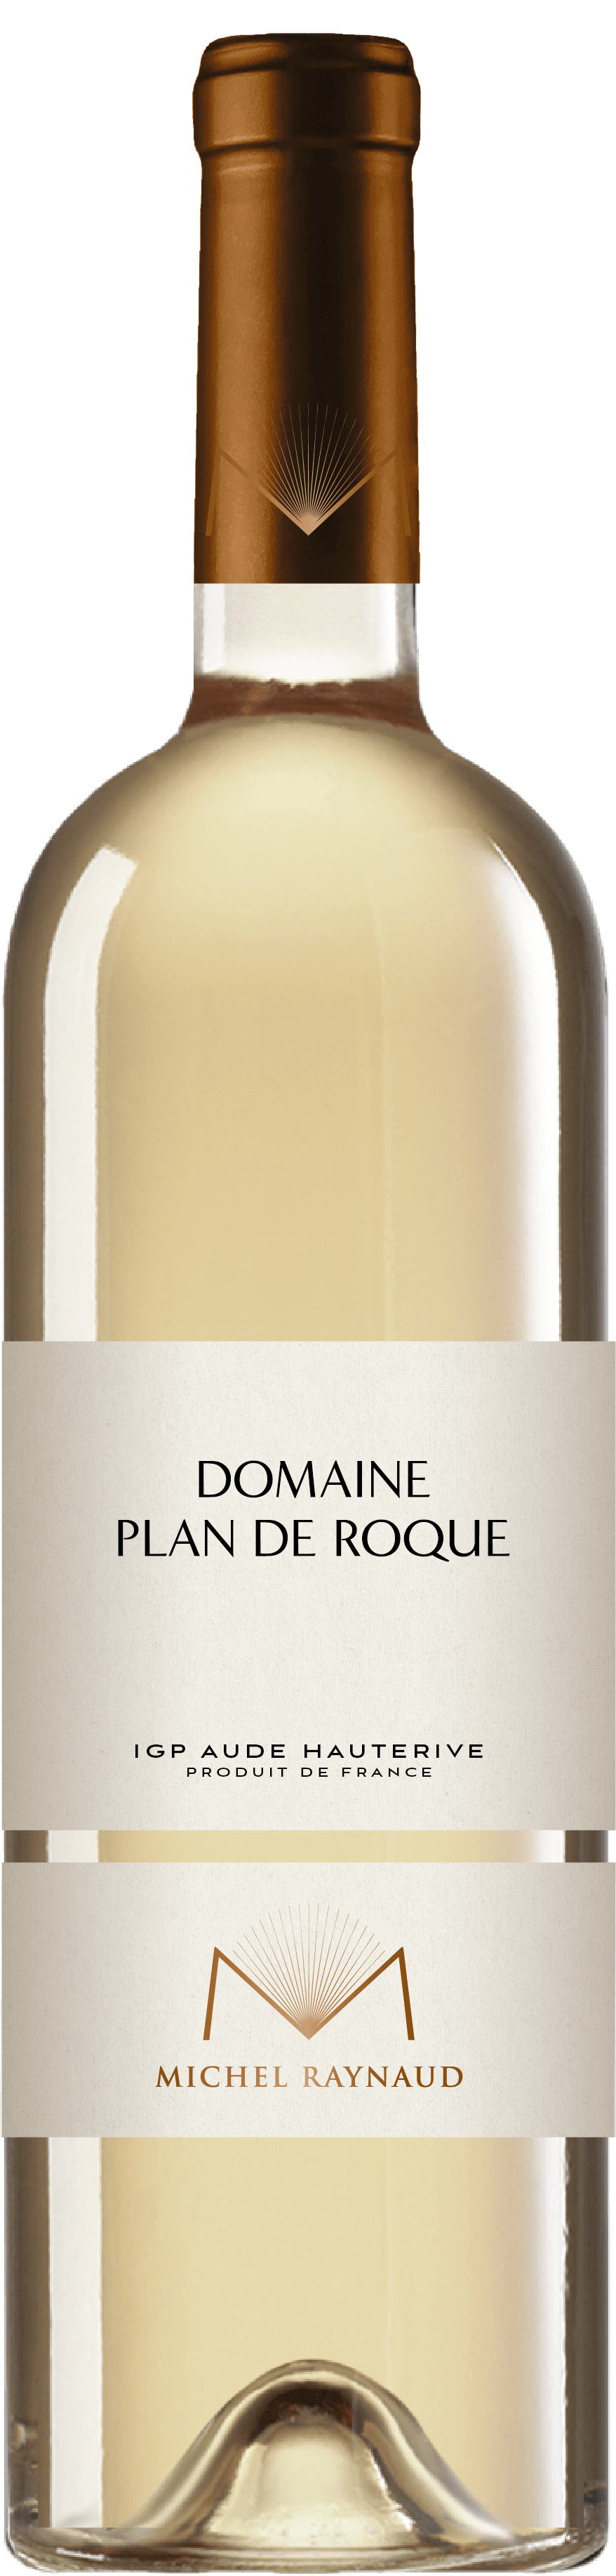 Domaine Plan De Roque – IGP Aude Hauterive blanc - Michel Raynaud